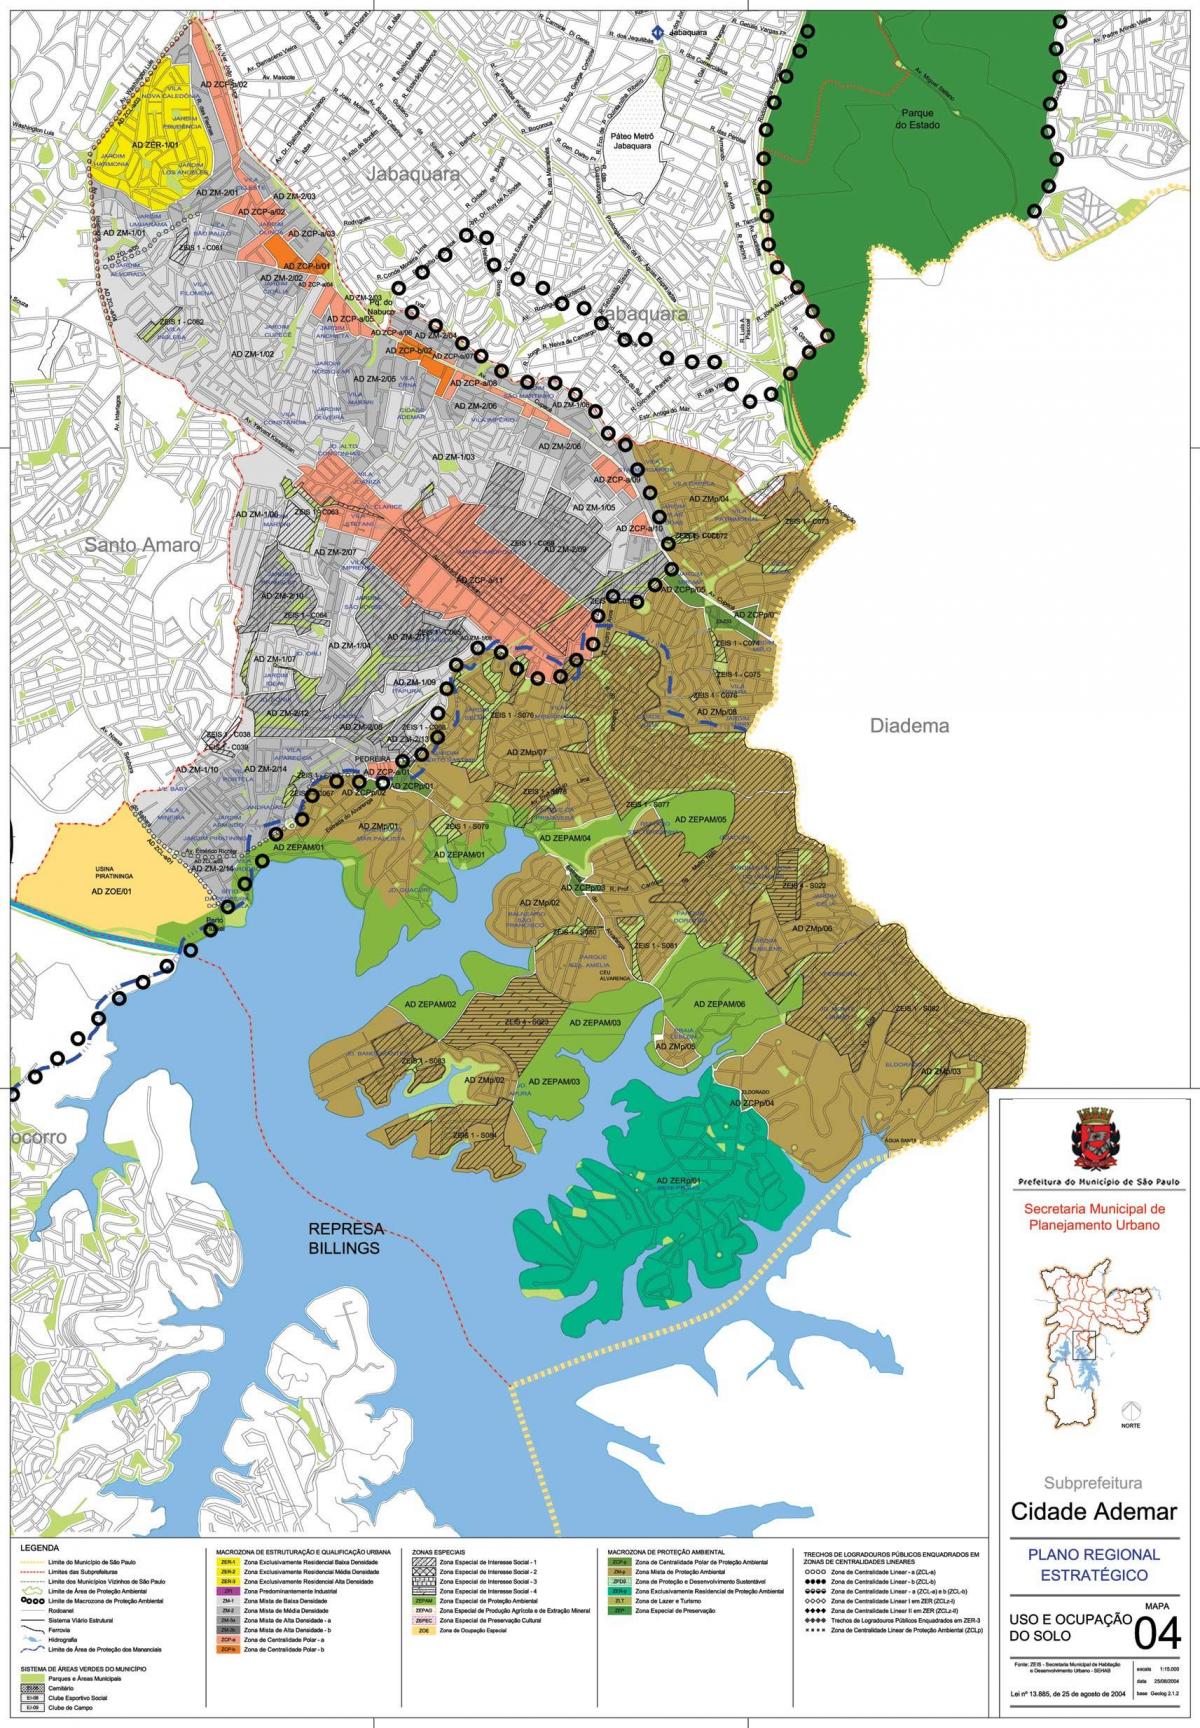 Kort over Cidade Ademar São Paulo - Besættelse af jord